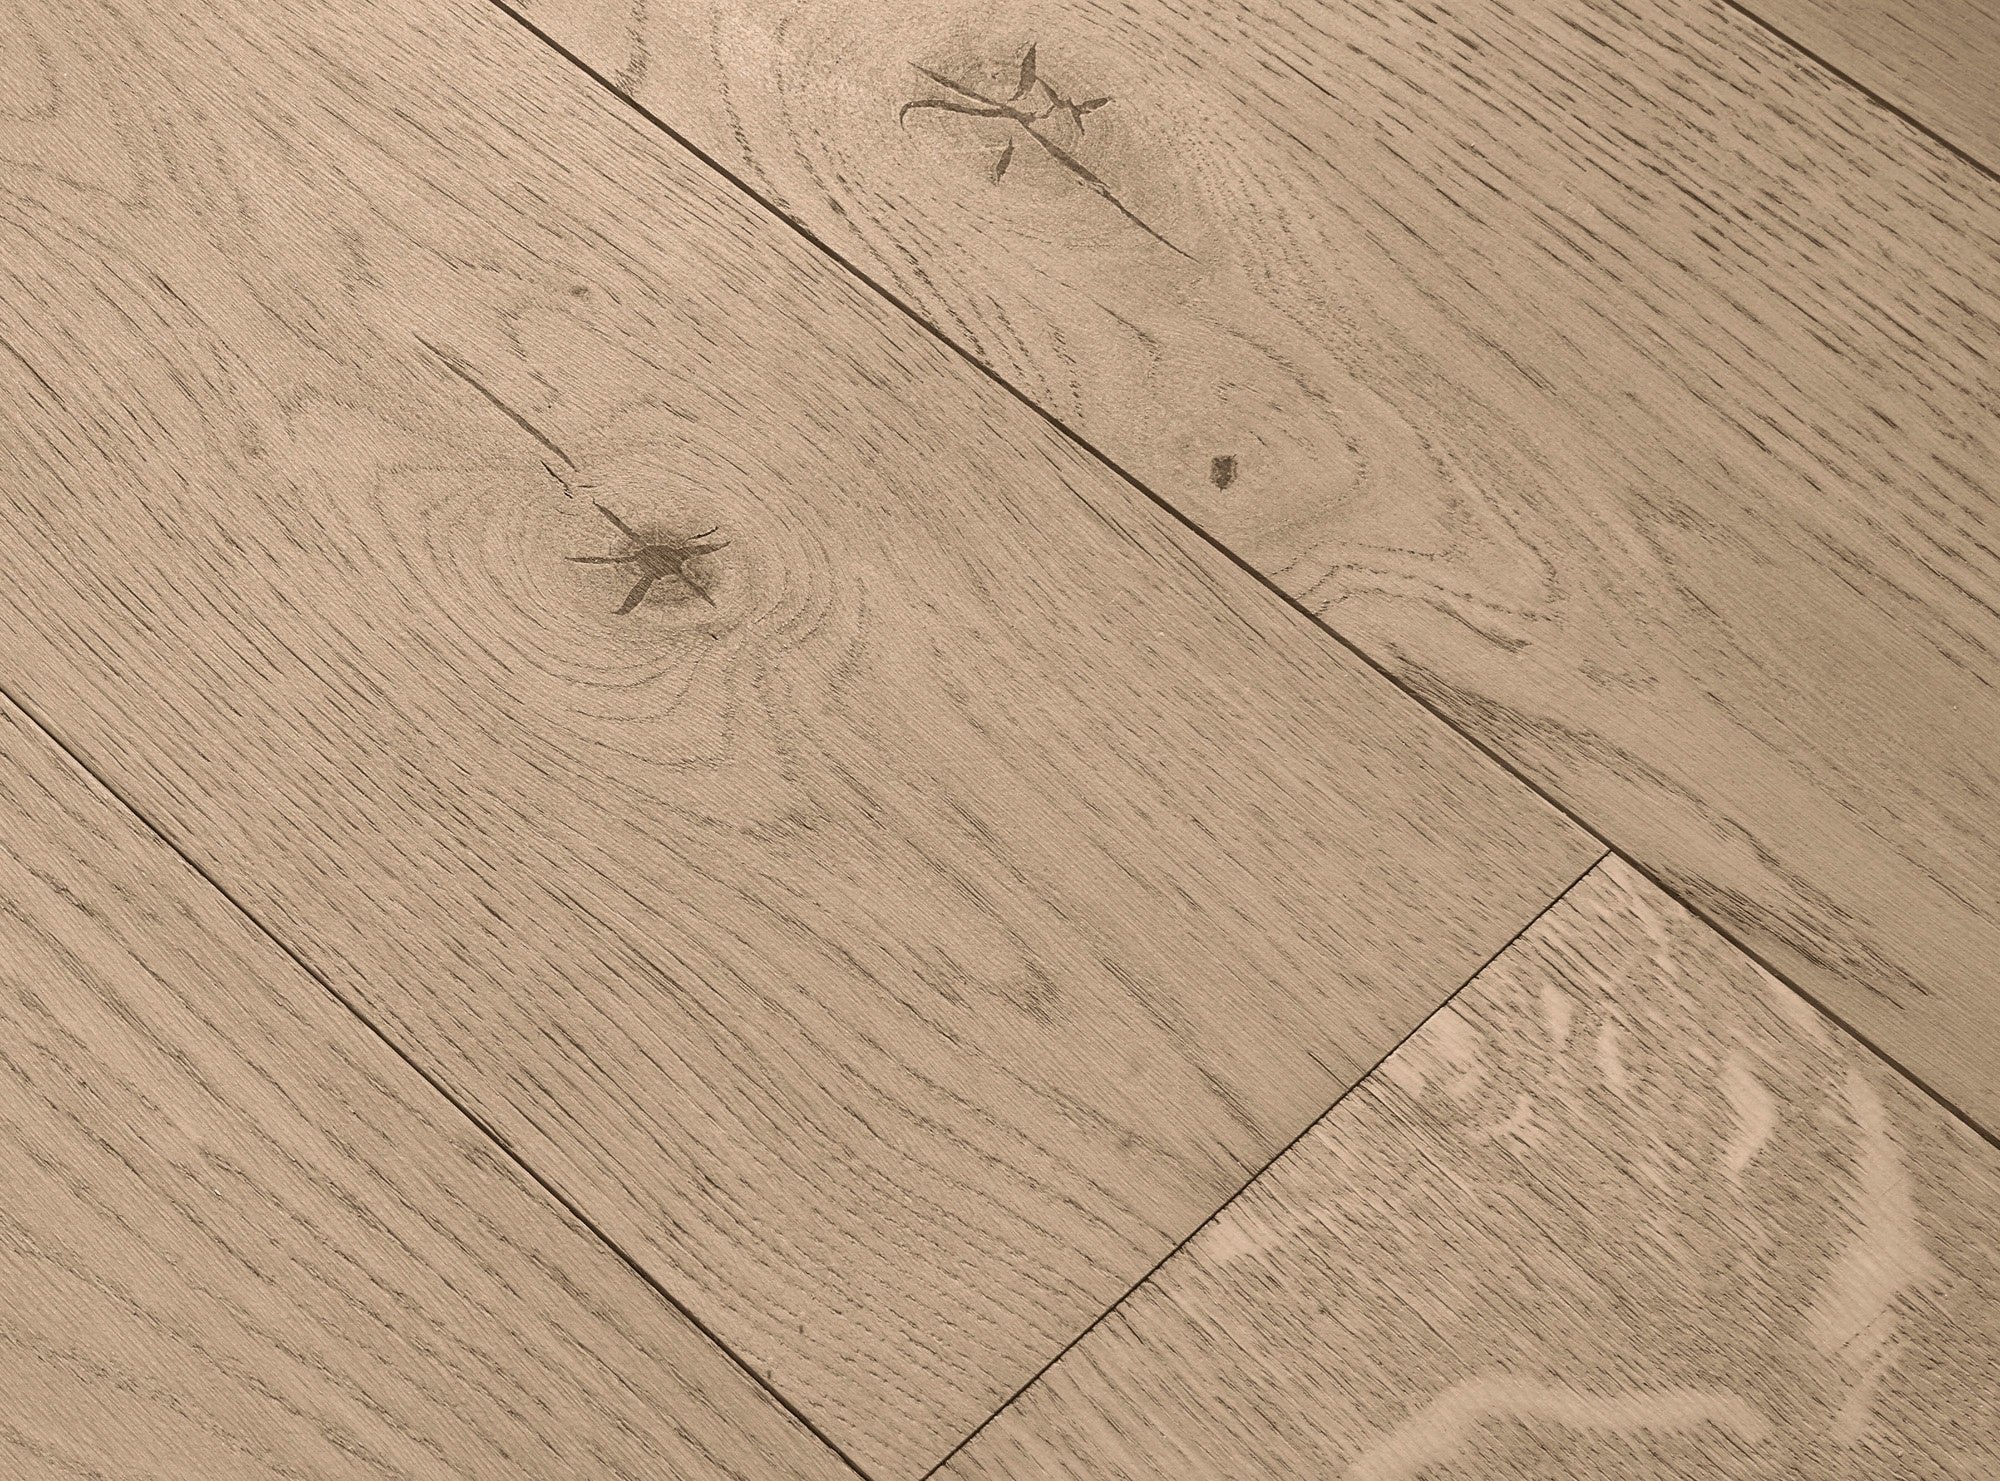 brushed wood - brushed wooden floor